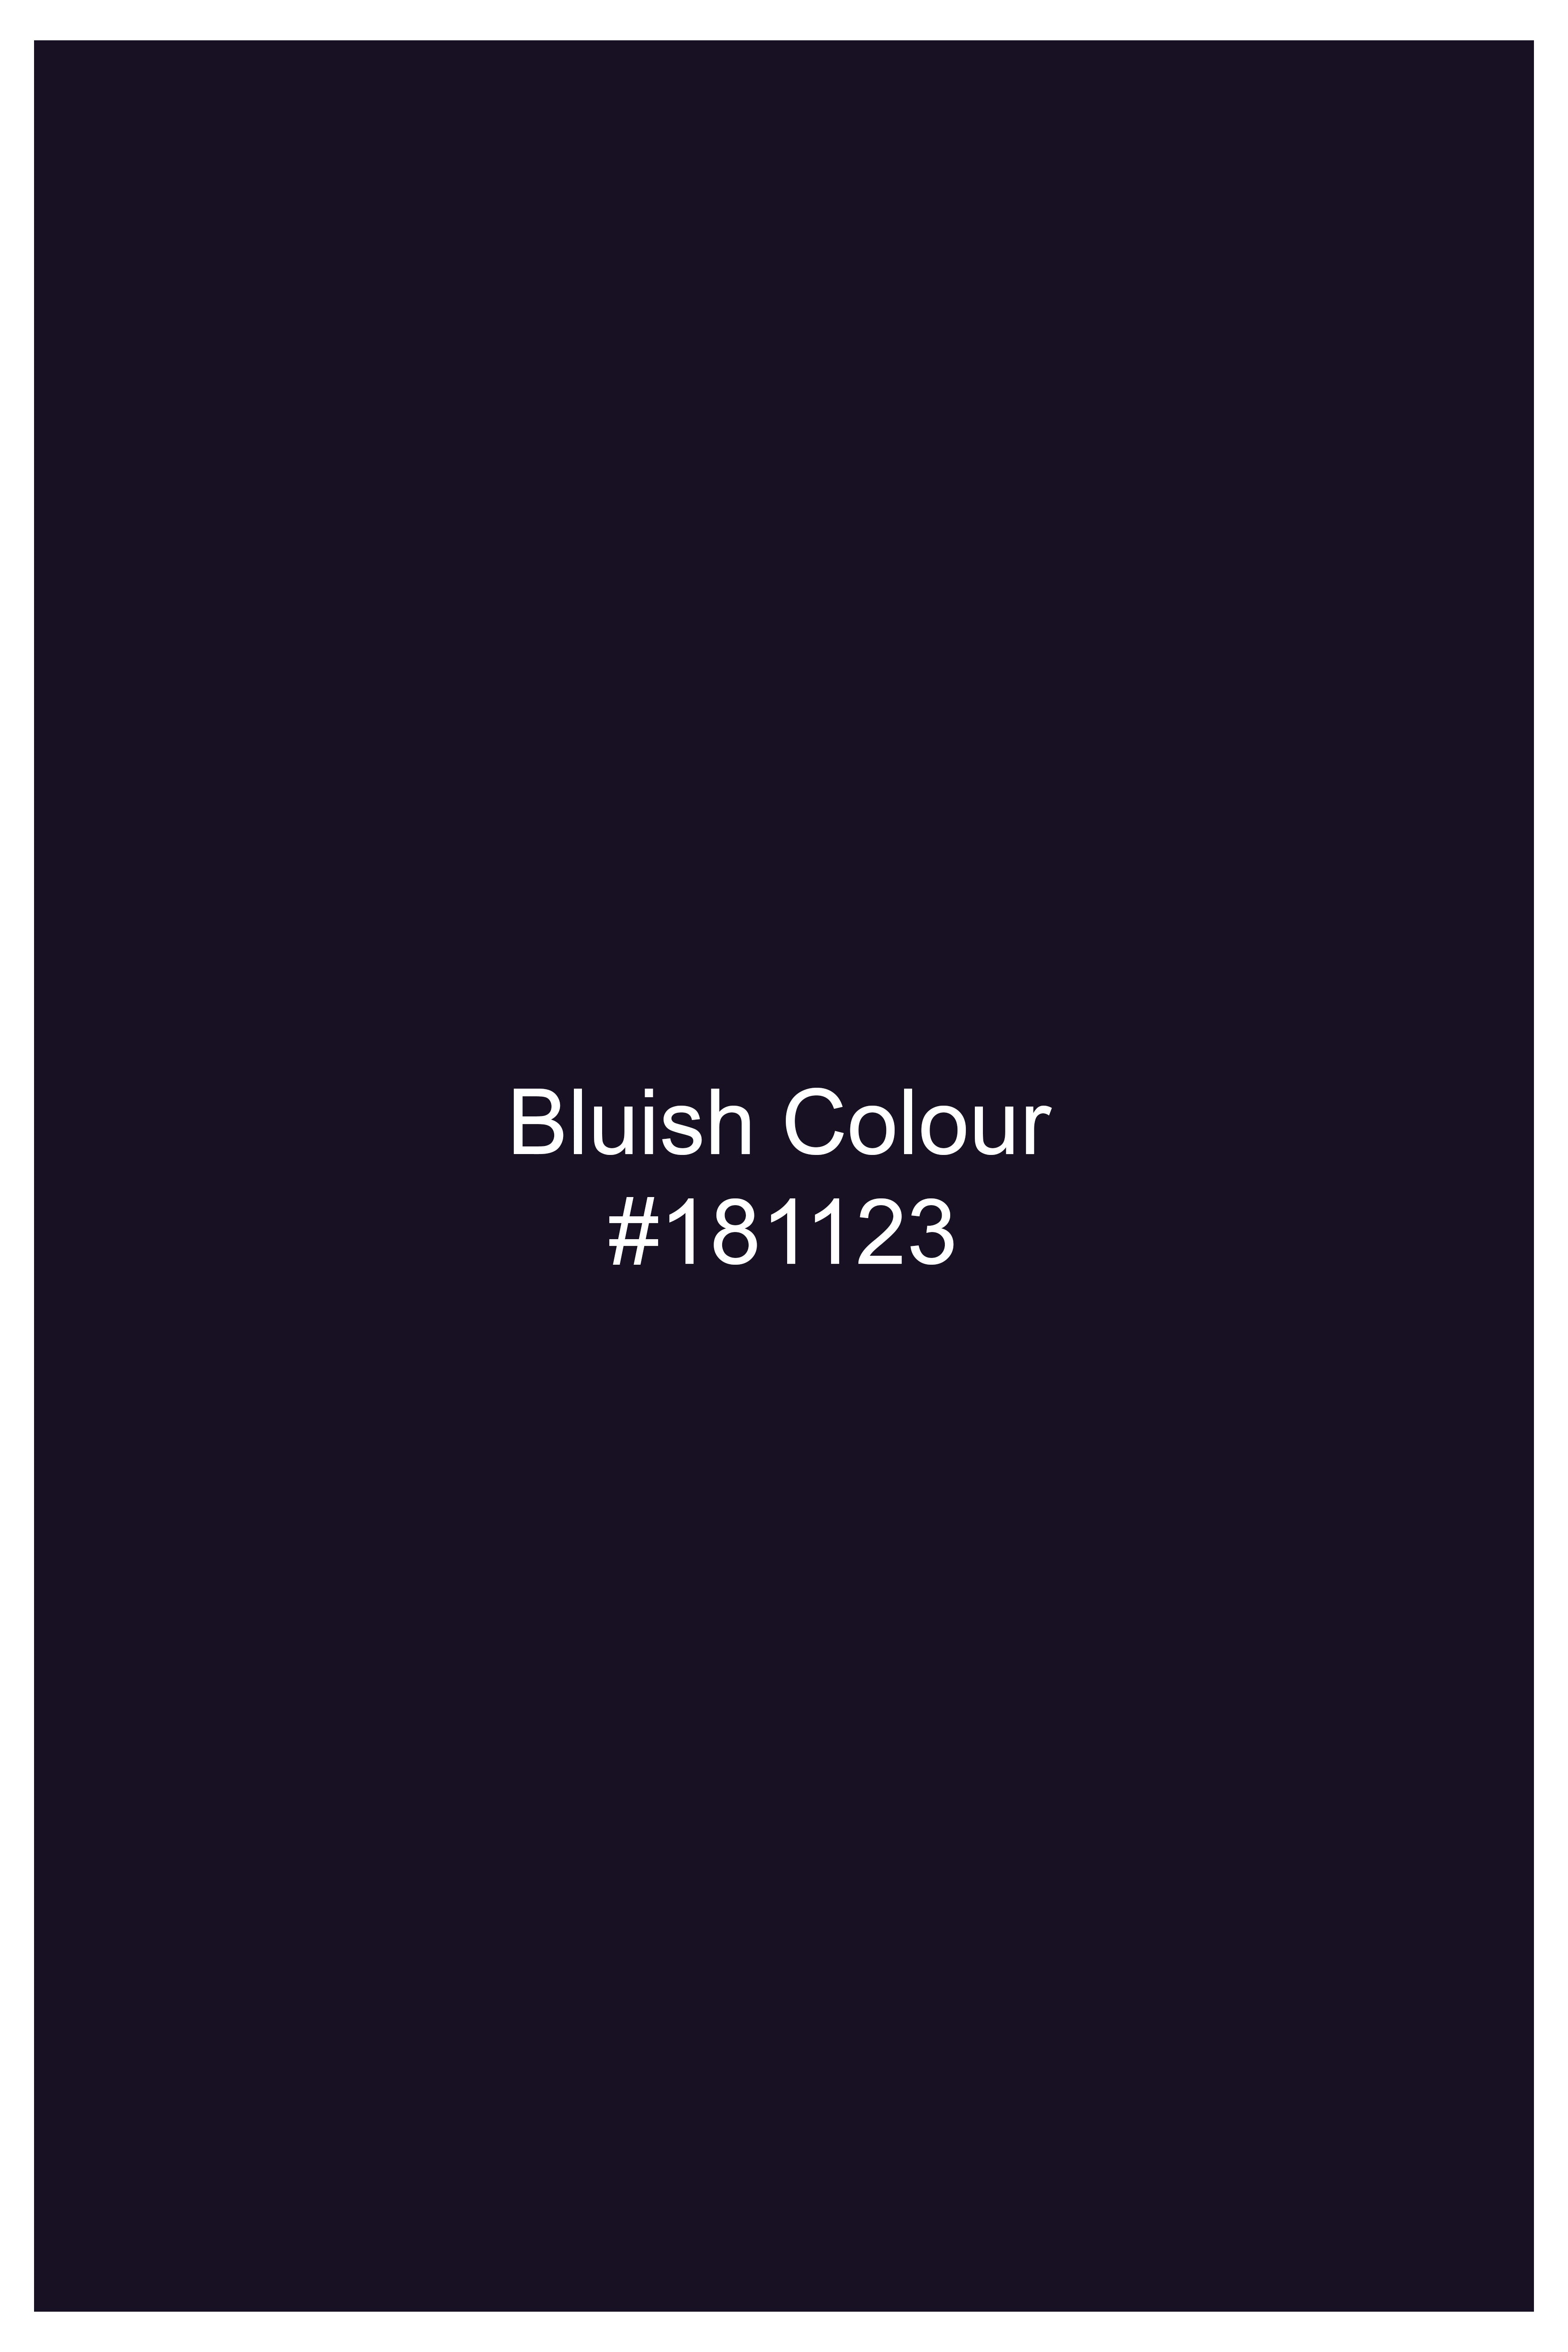 Bluish Wool Rich Waistcoat V3029-36, V3029-38, V3029-40, V3029-42, V3029-44, V3029-46, V3029-48, V3029-50, V3029-29, V3029-54, V3029-56, V3029-58, V3029-60